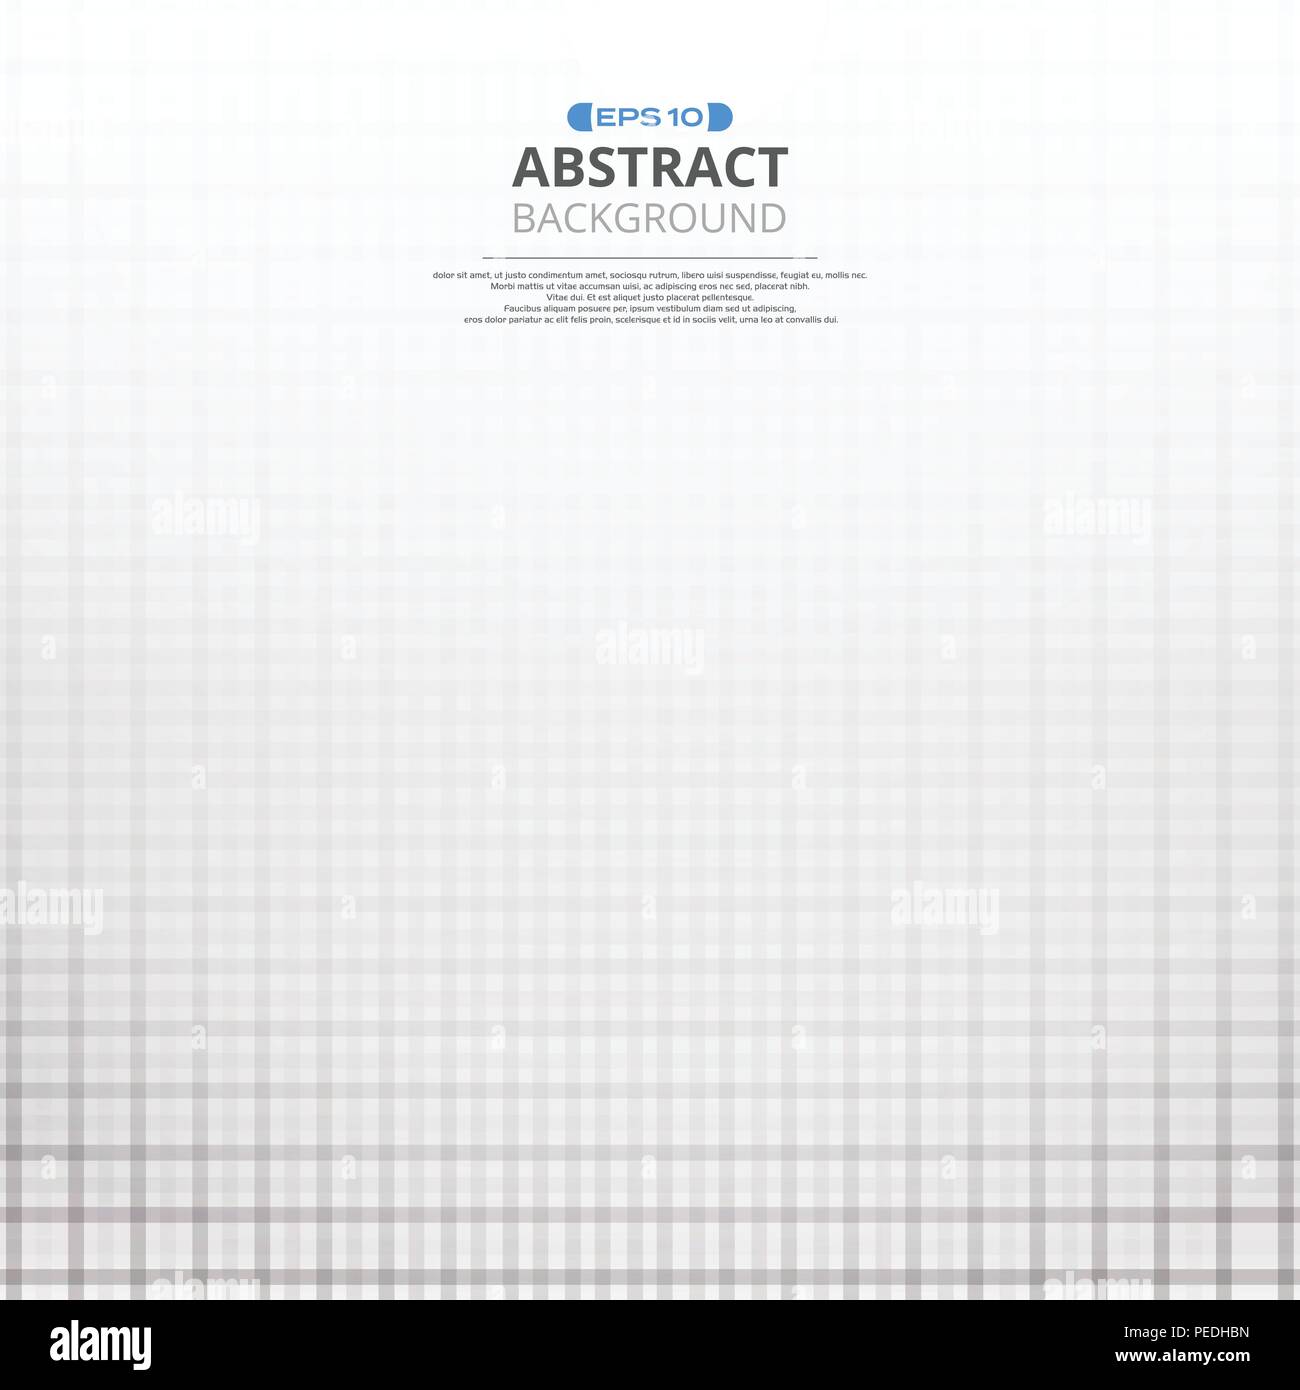 Résumé du noir et blanc motif de ligne de fond avec l'espace, vecteur illustration eps10 Illustration de Vecteur